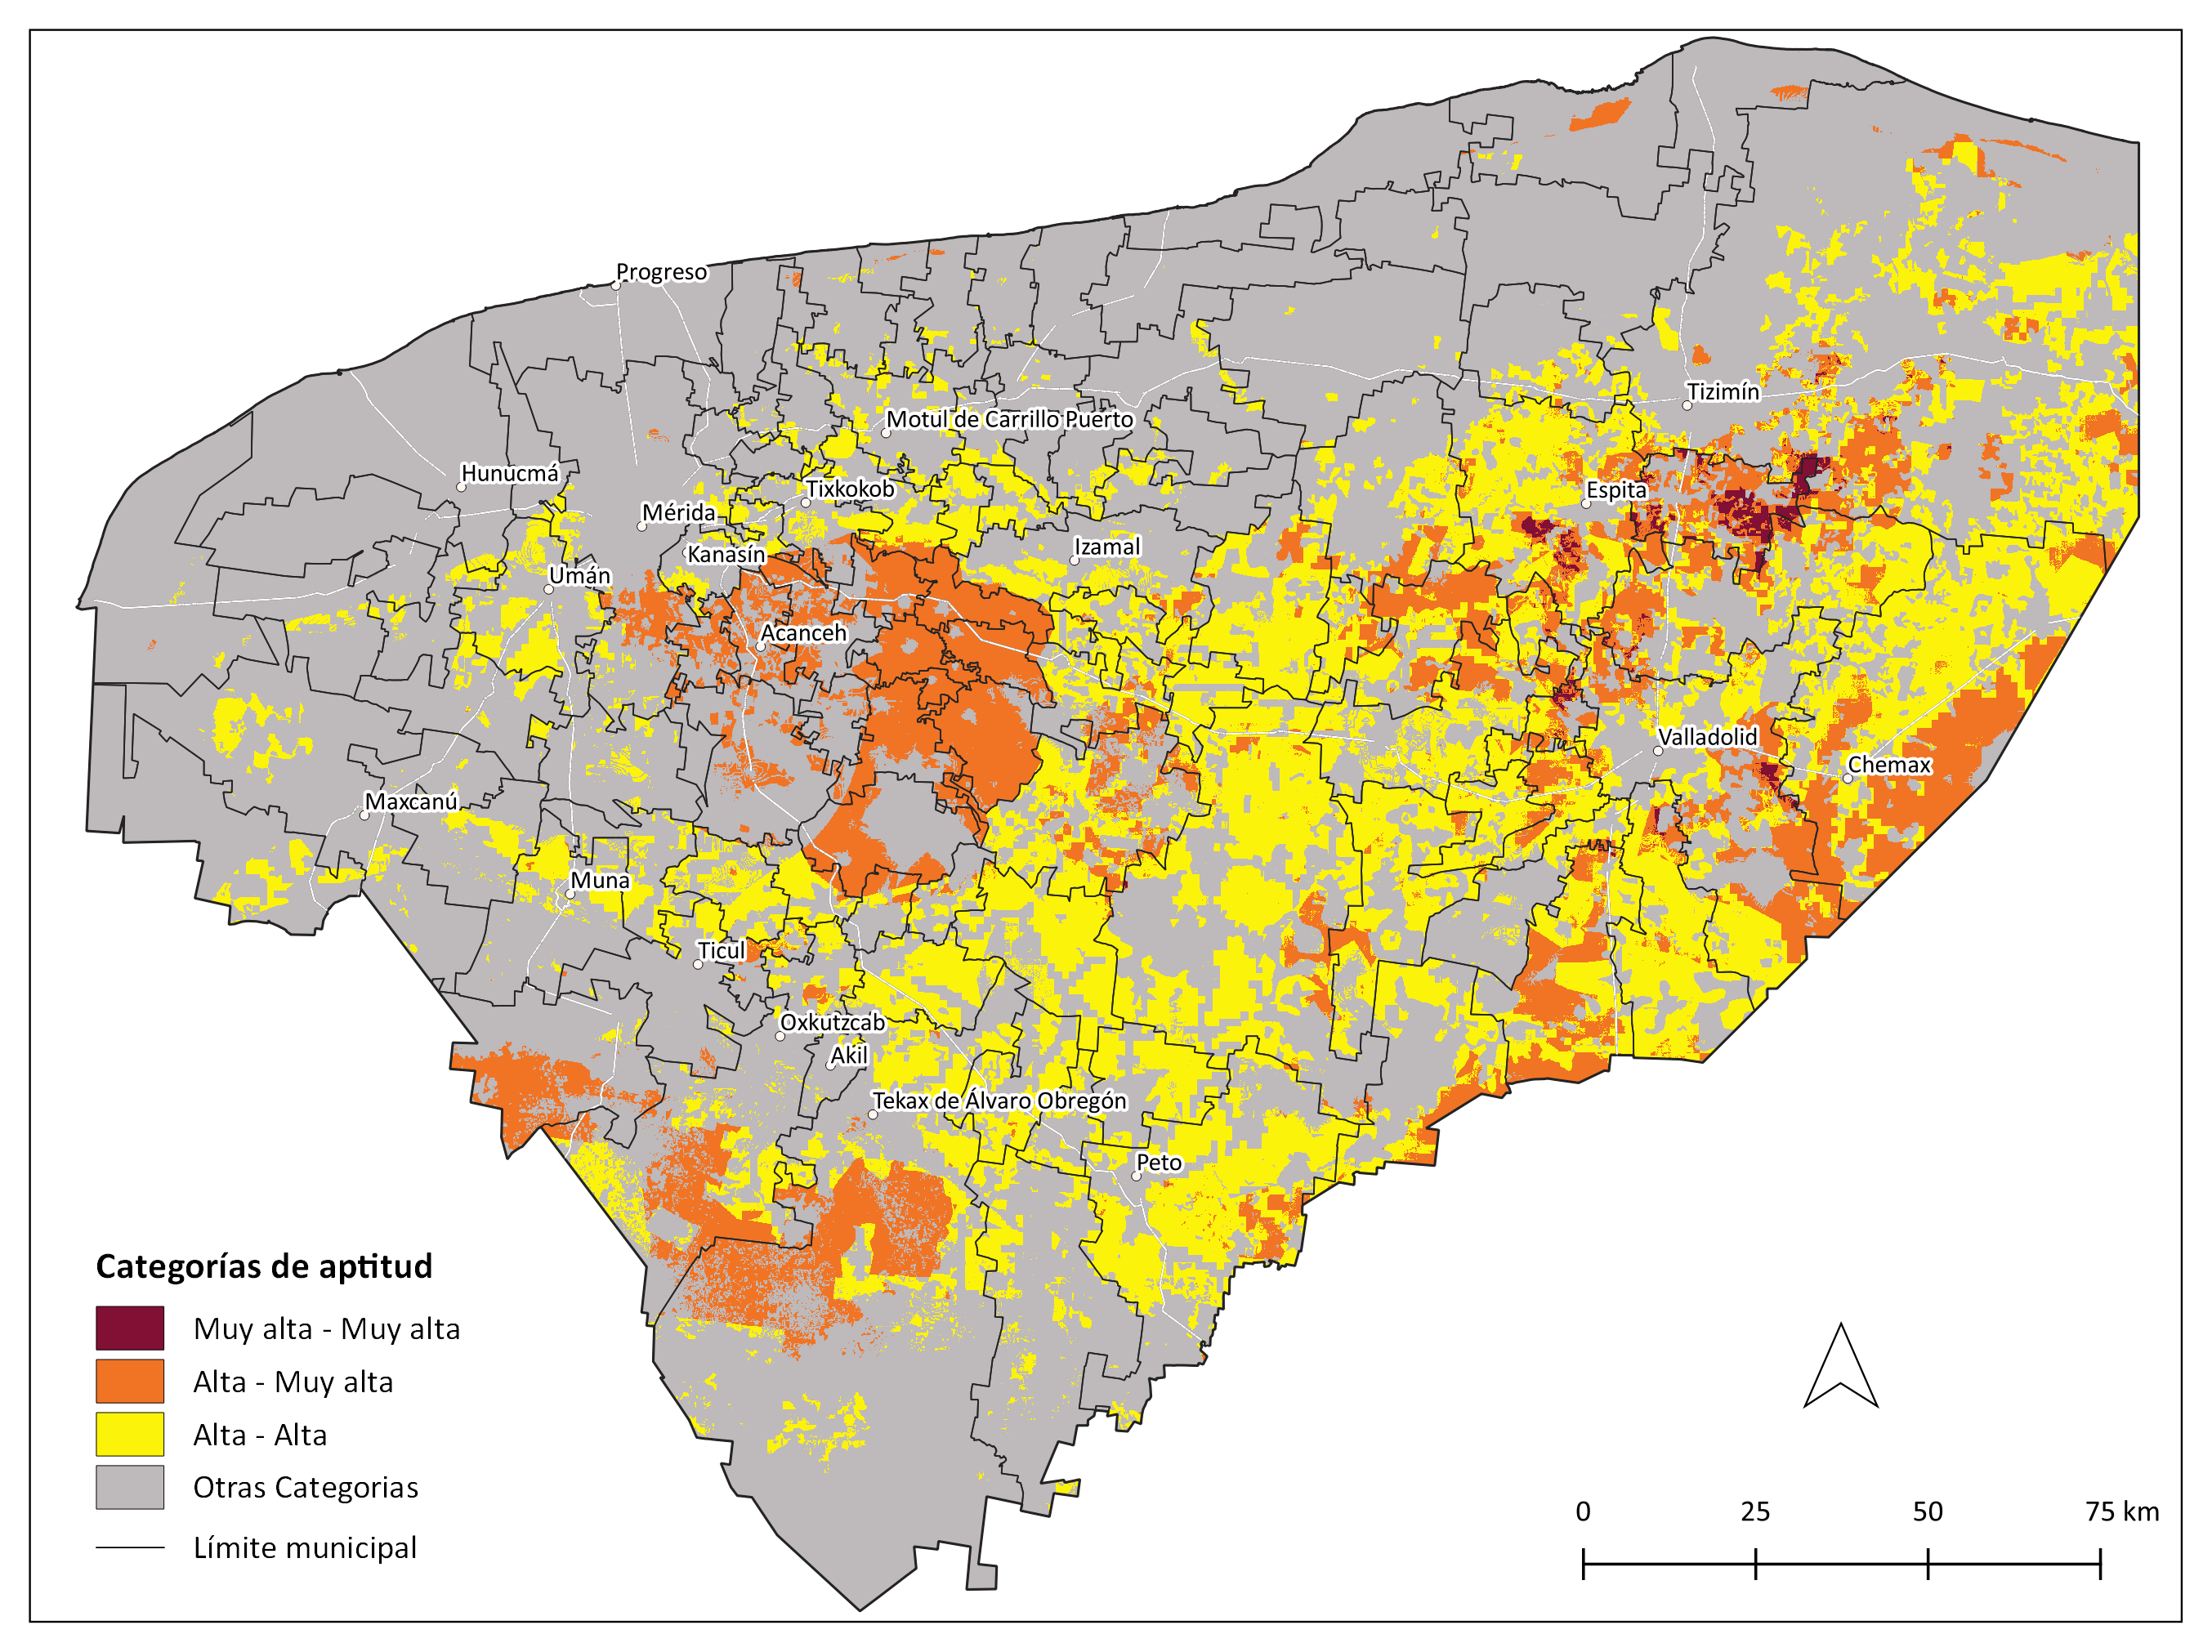 _images/mapa_agricultura_eq_cruza_conservacion_eq.png